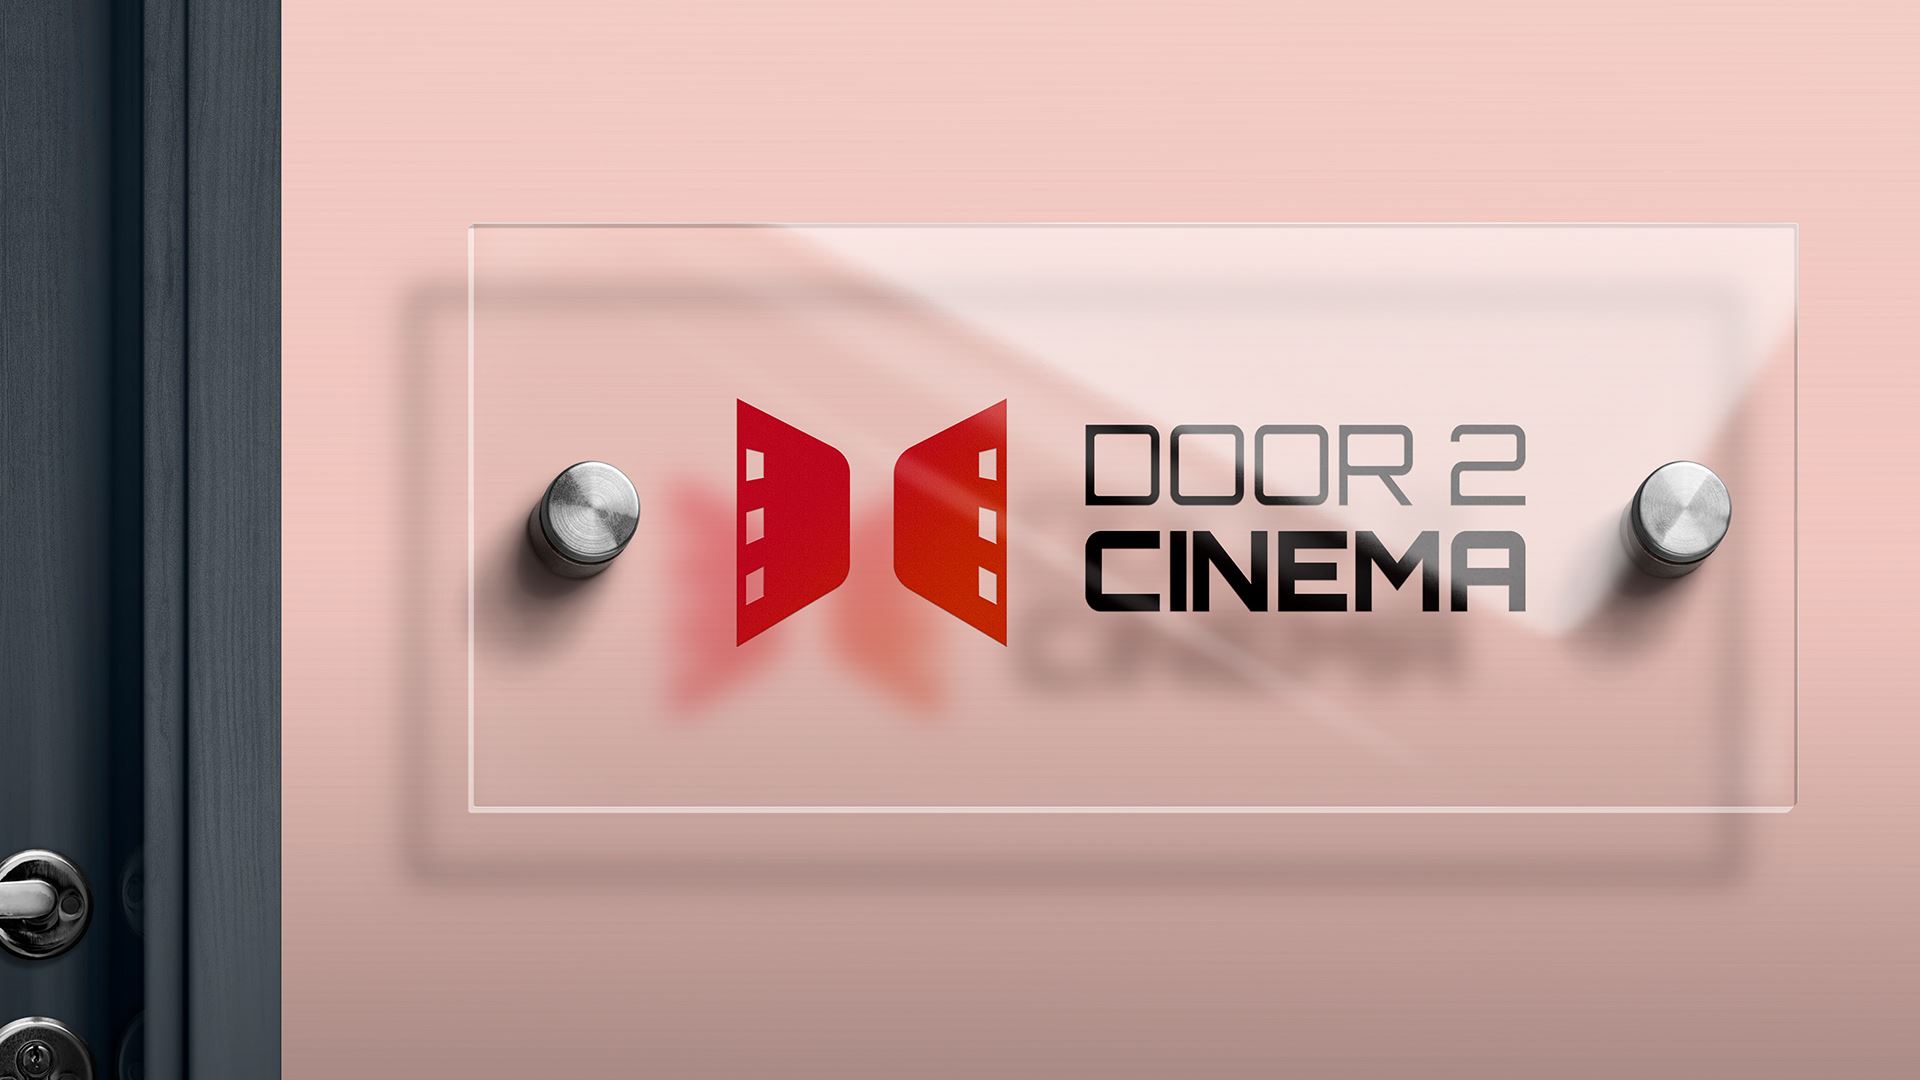 Logo Design and Branding of Door 2 Cinema.